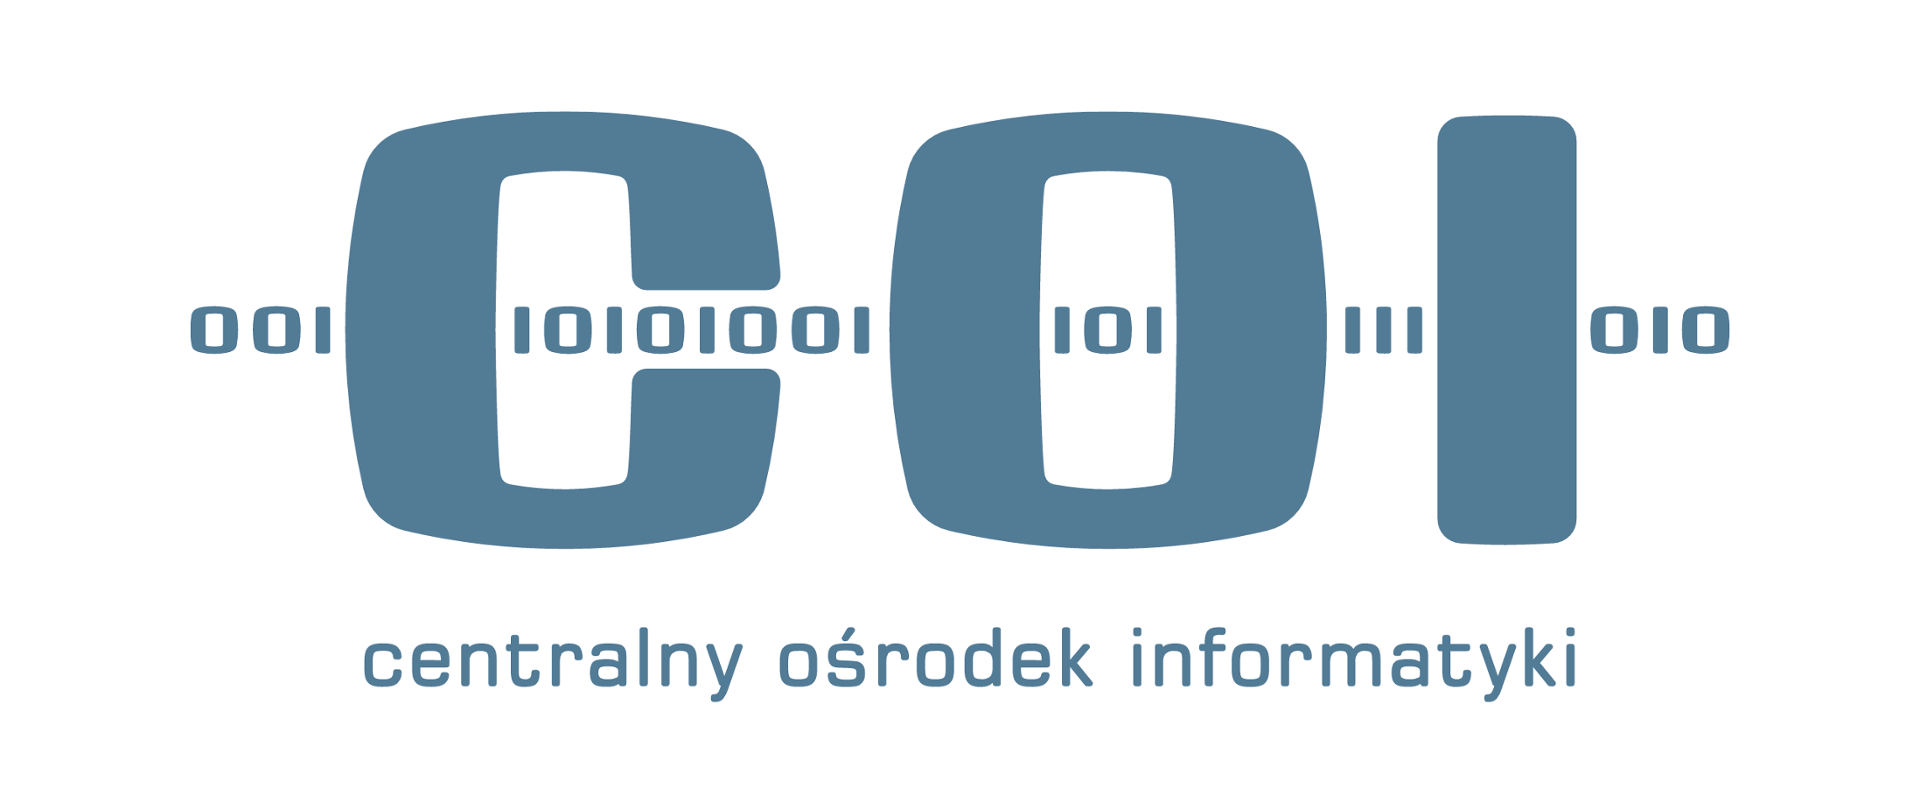 Niebieskie logo Centralnego Ośrodka Informatyki (COI) na białym tle.